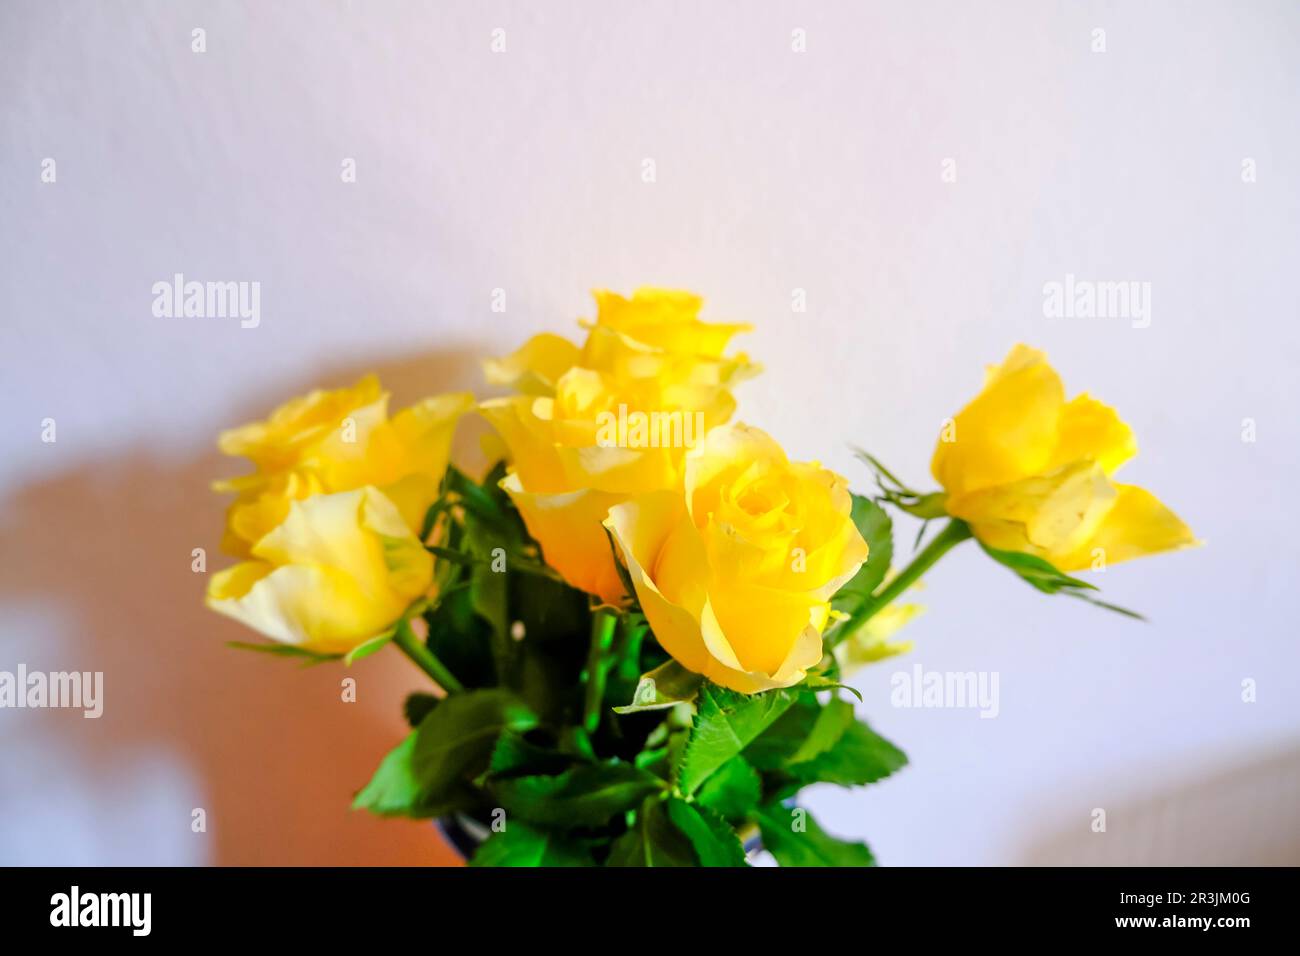 bouquet de roses jaunes sur fond blanc. Vue de dessus. Copier l'espace. Maquette fleurie. Banque D'Images